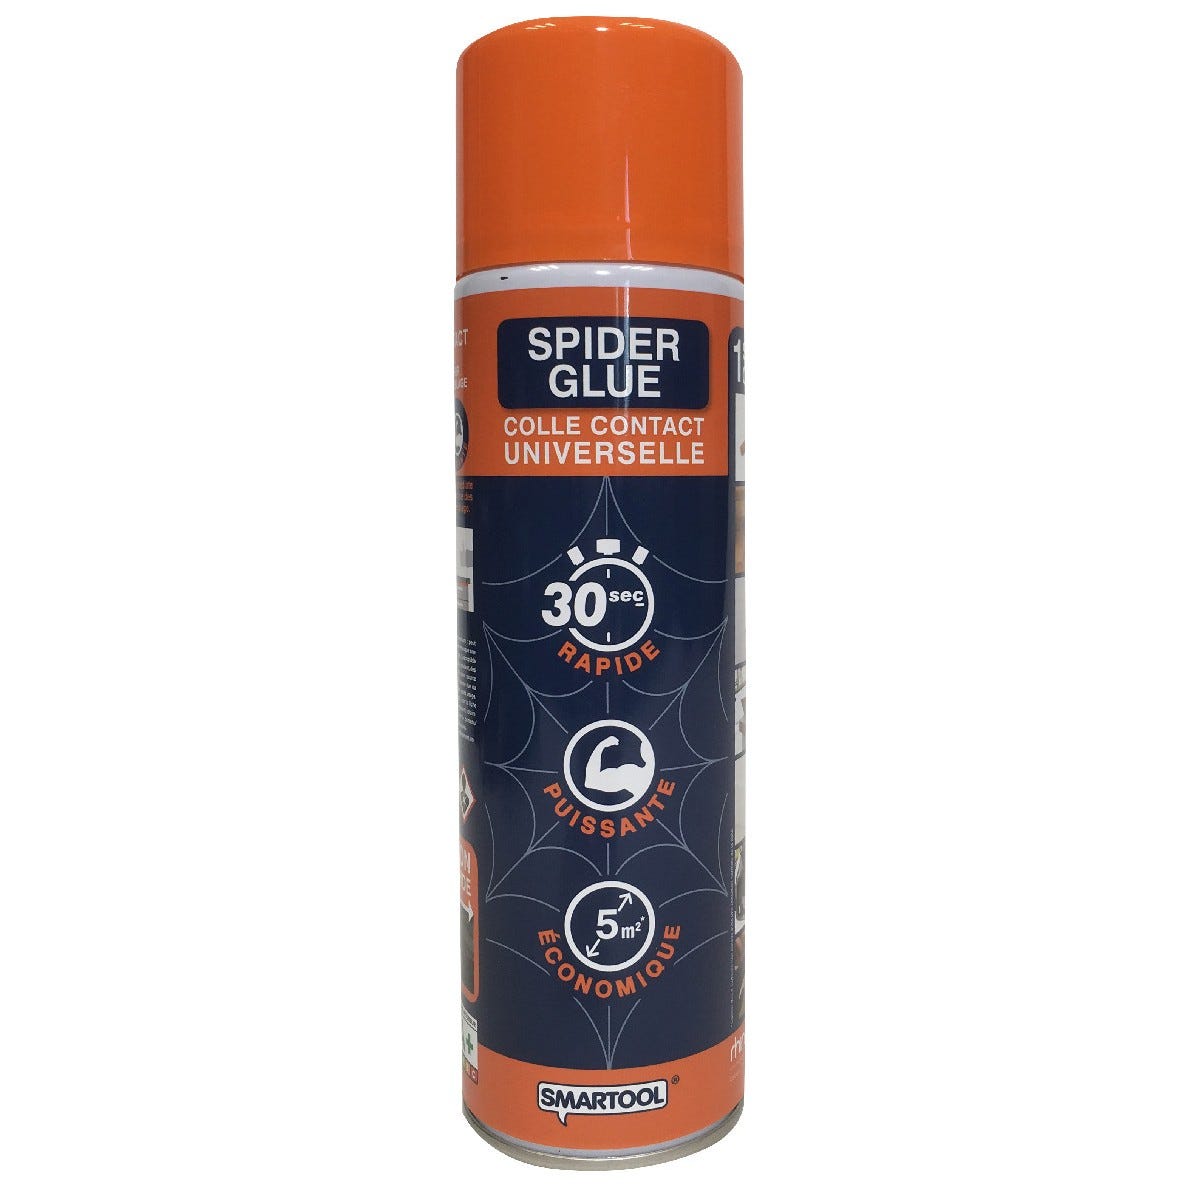 Colla universale Spray Spider Glue 200ml SMARTOOL Polimerizzazione